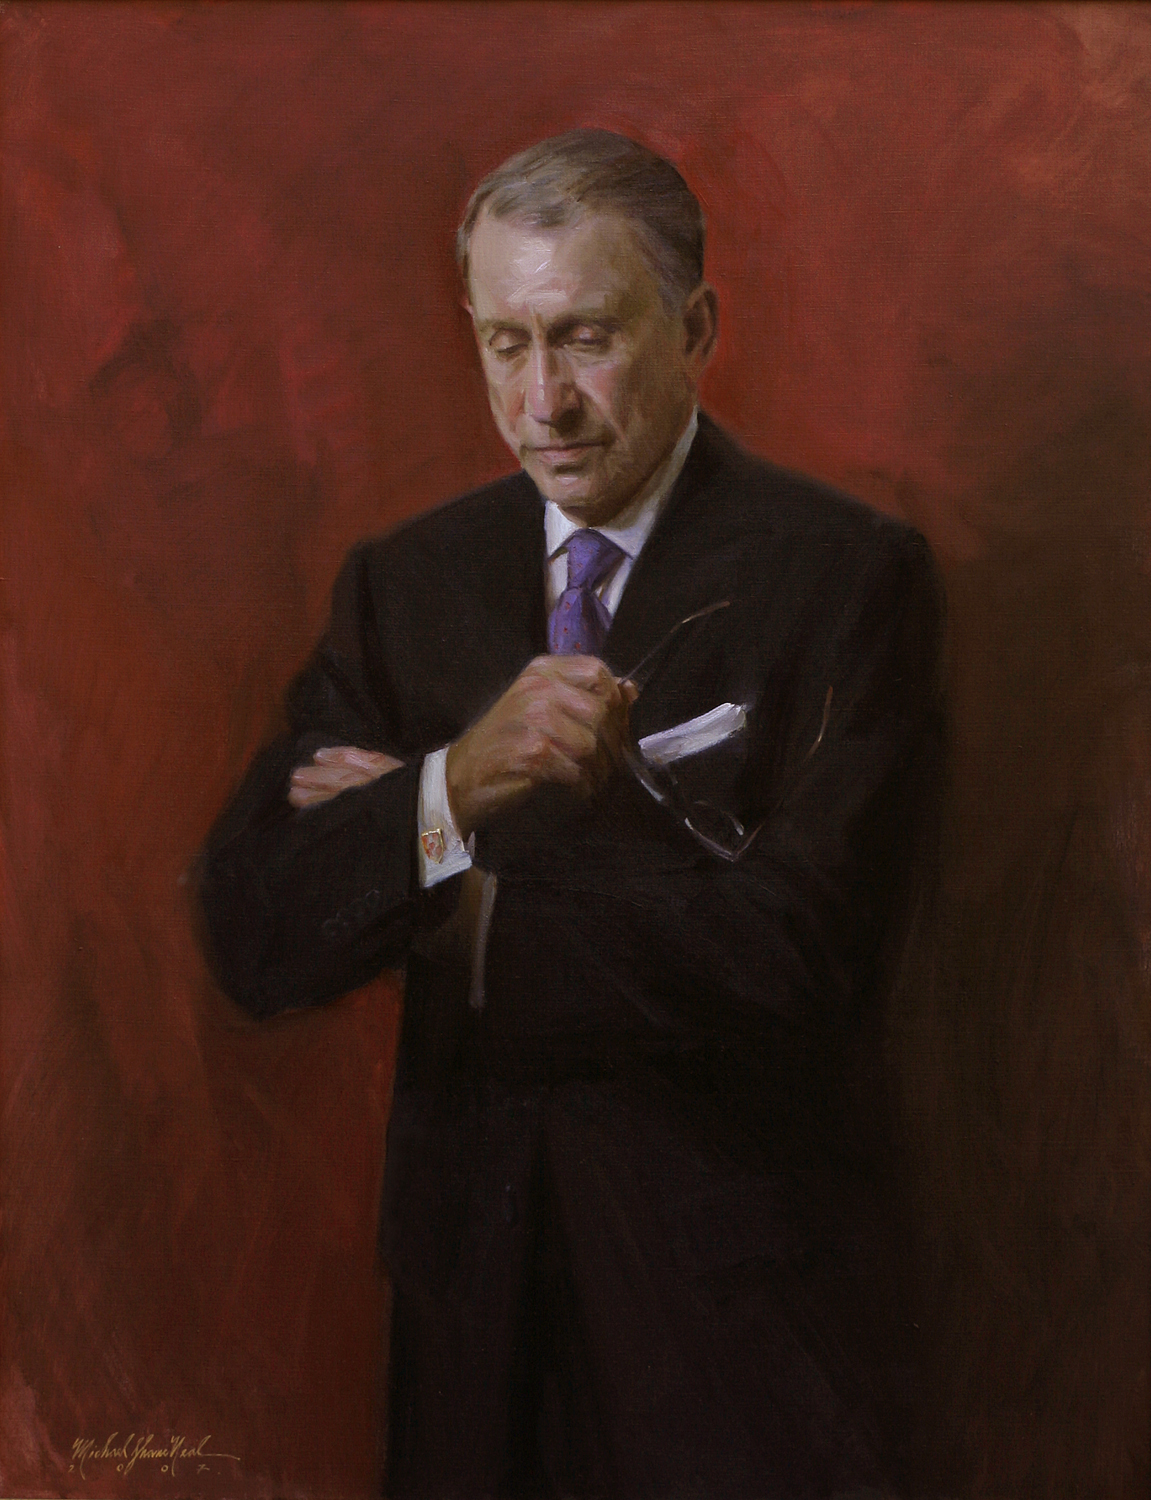 U.S. Senator Arlen Specter, Yale Law School, New Haven, CT, 34" x 52", oil on canvas, by Michael Shane Neal